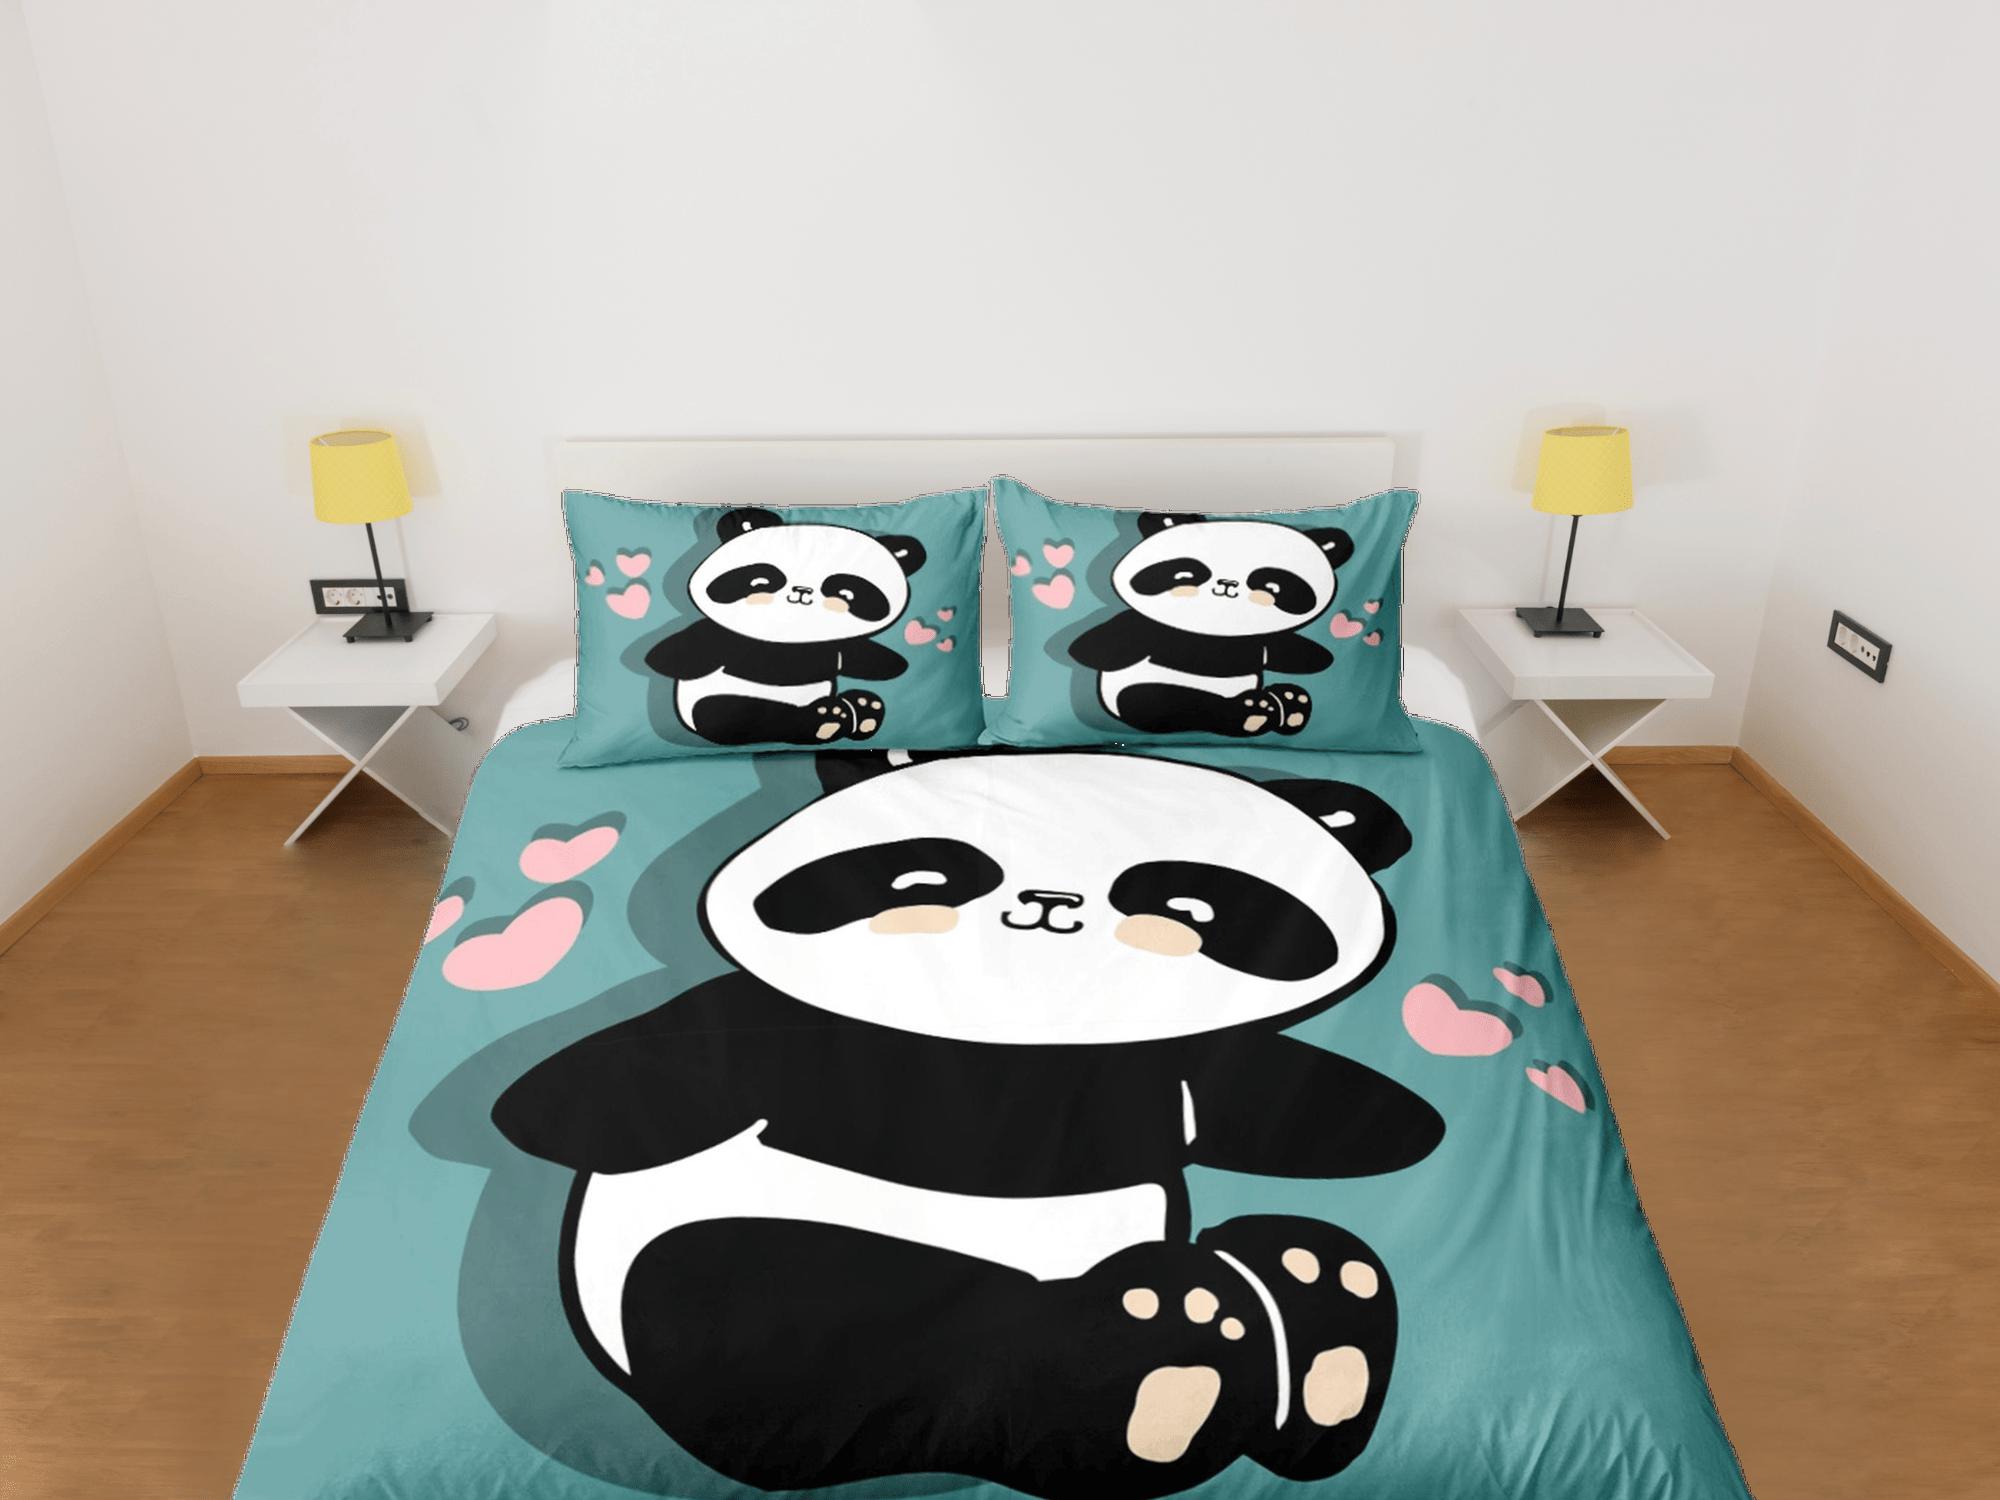 daintyduvet Panda teal green duvet cover set kids, bedding set full, king, queen, dorm bedding, toddler bedding, aesthetic bedspread, panda lovers gift